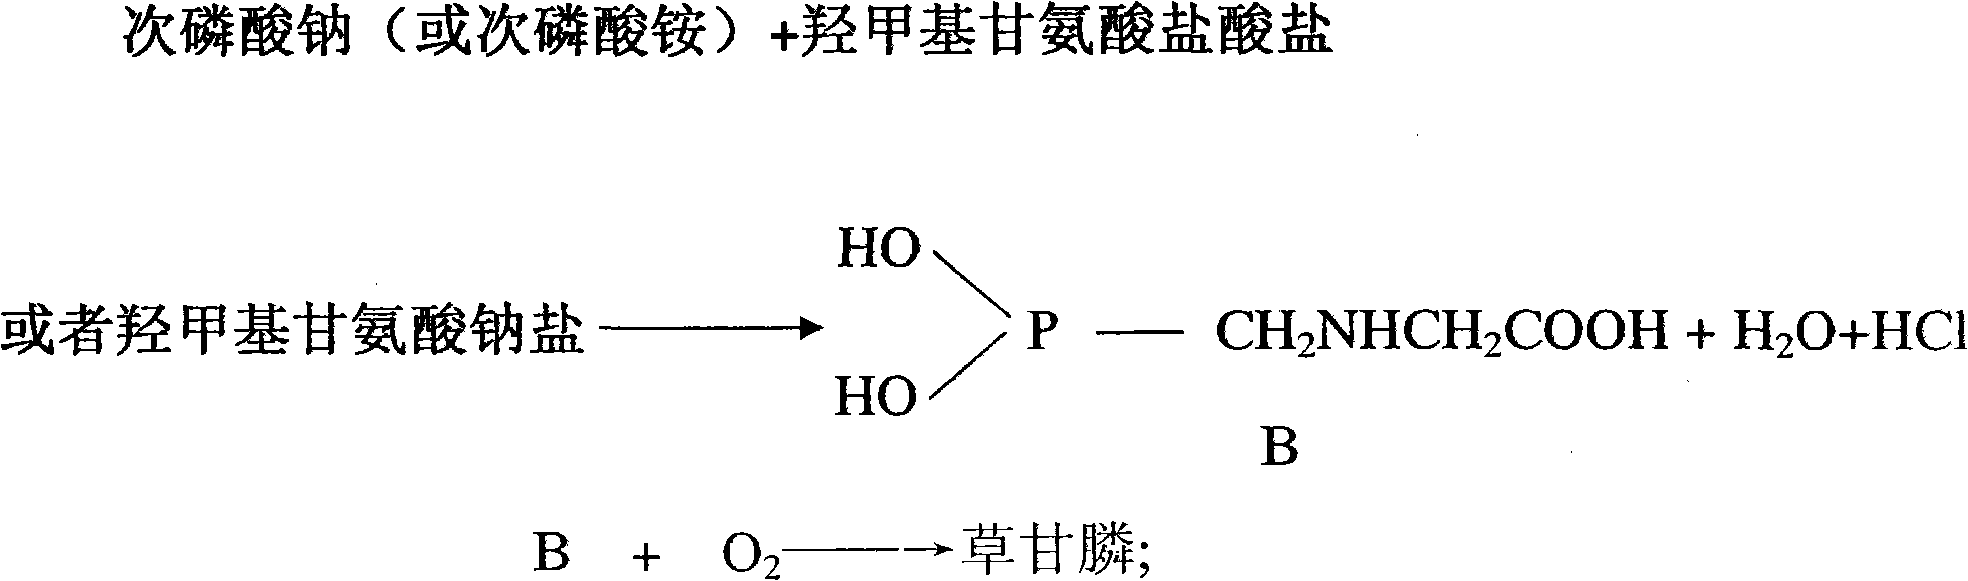 Application of phosphine or hypophosphite or phosphate in preparation of glyphosate